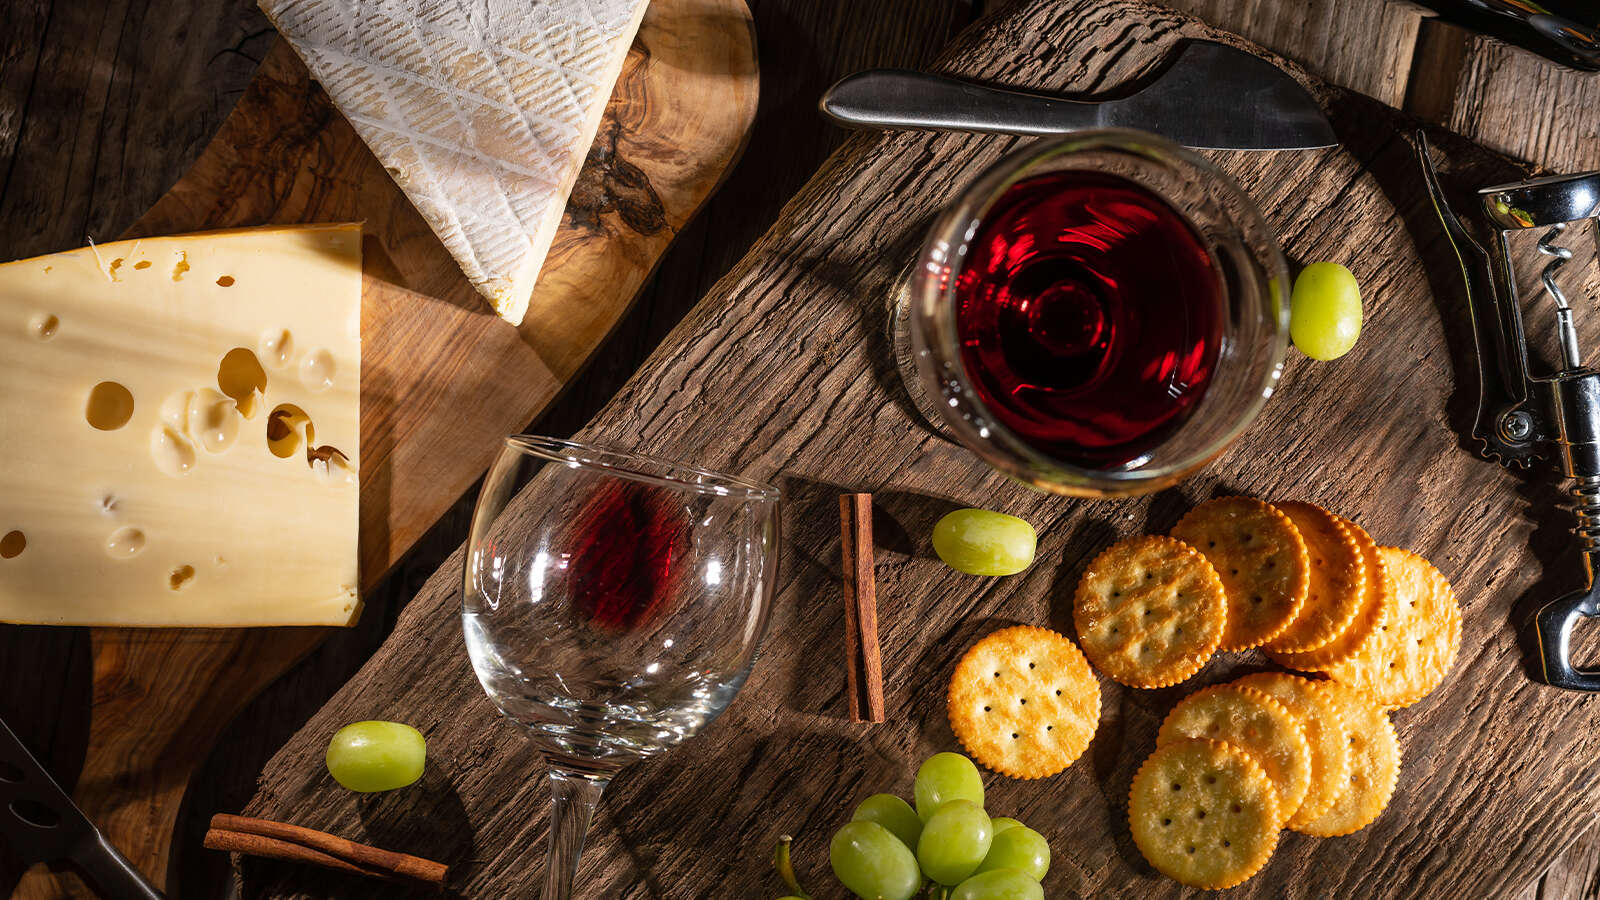 Comment apprécier le vin français dans toute sa saveur ?